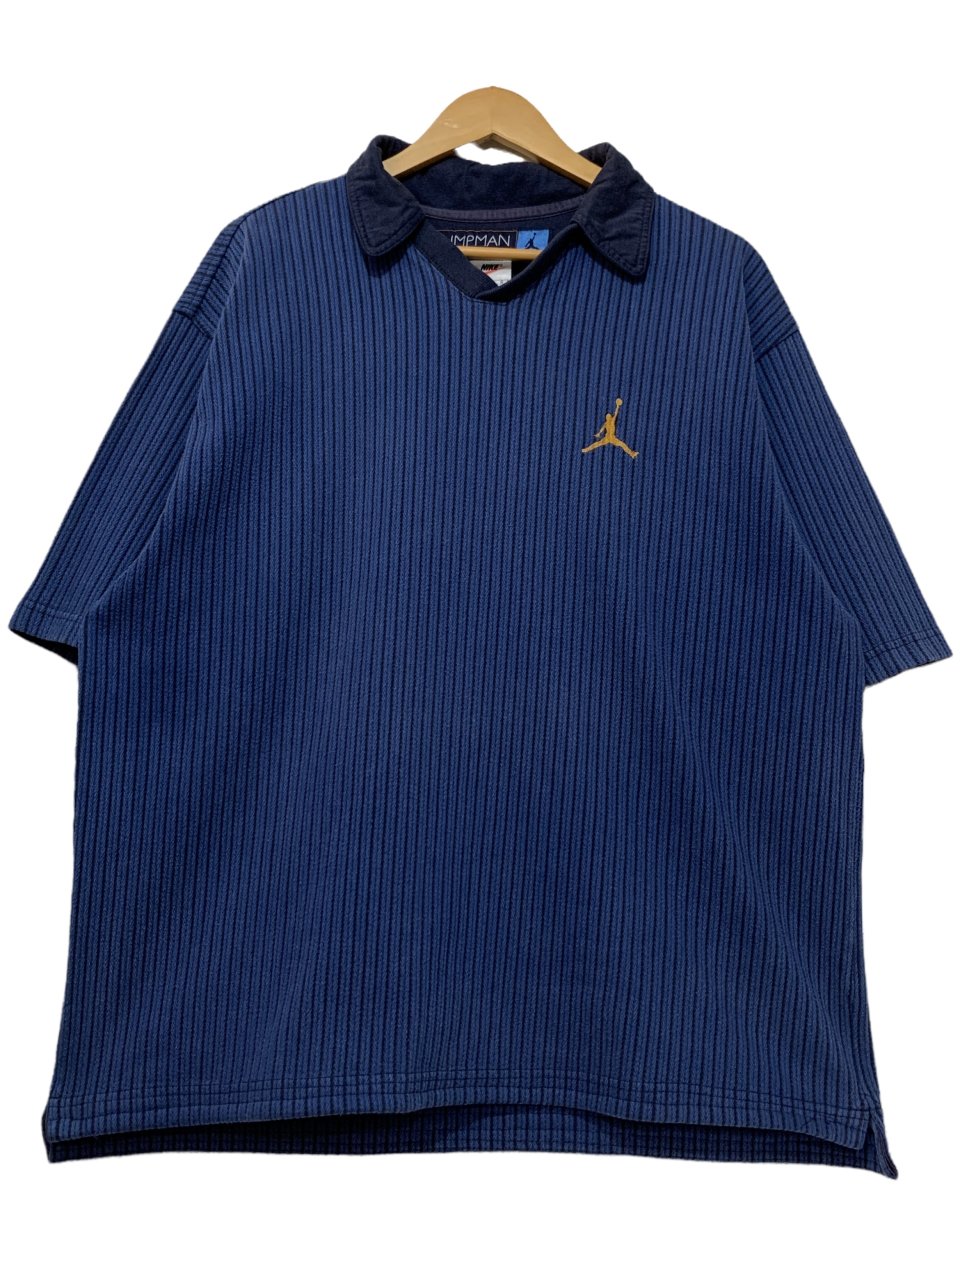 97年製 NIKE JORDAN Cotton Knit S/S Polo Shirt 青紺 L 90s ナイキ